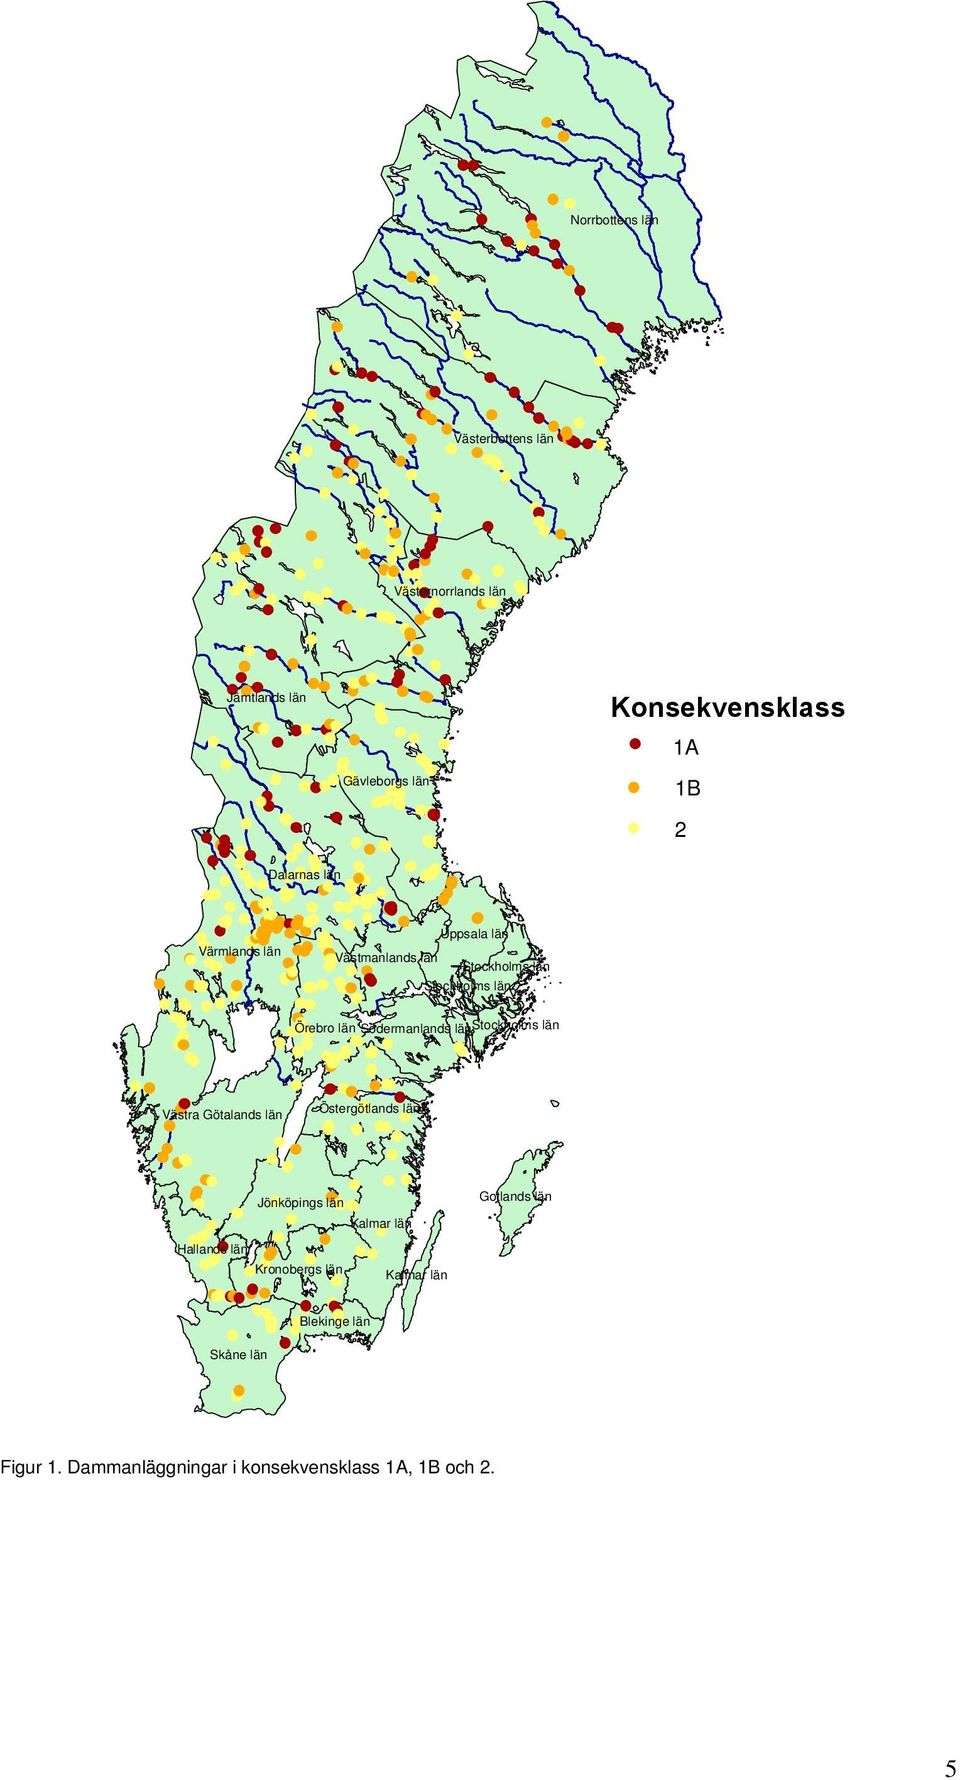 Södermanlands länstockholms län Västra Götalands län Östergötlands län Jönköpings län Kalmar län Gotlands